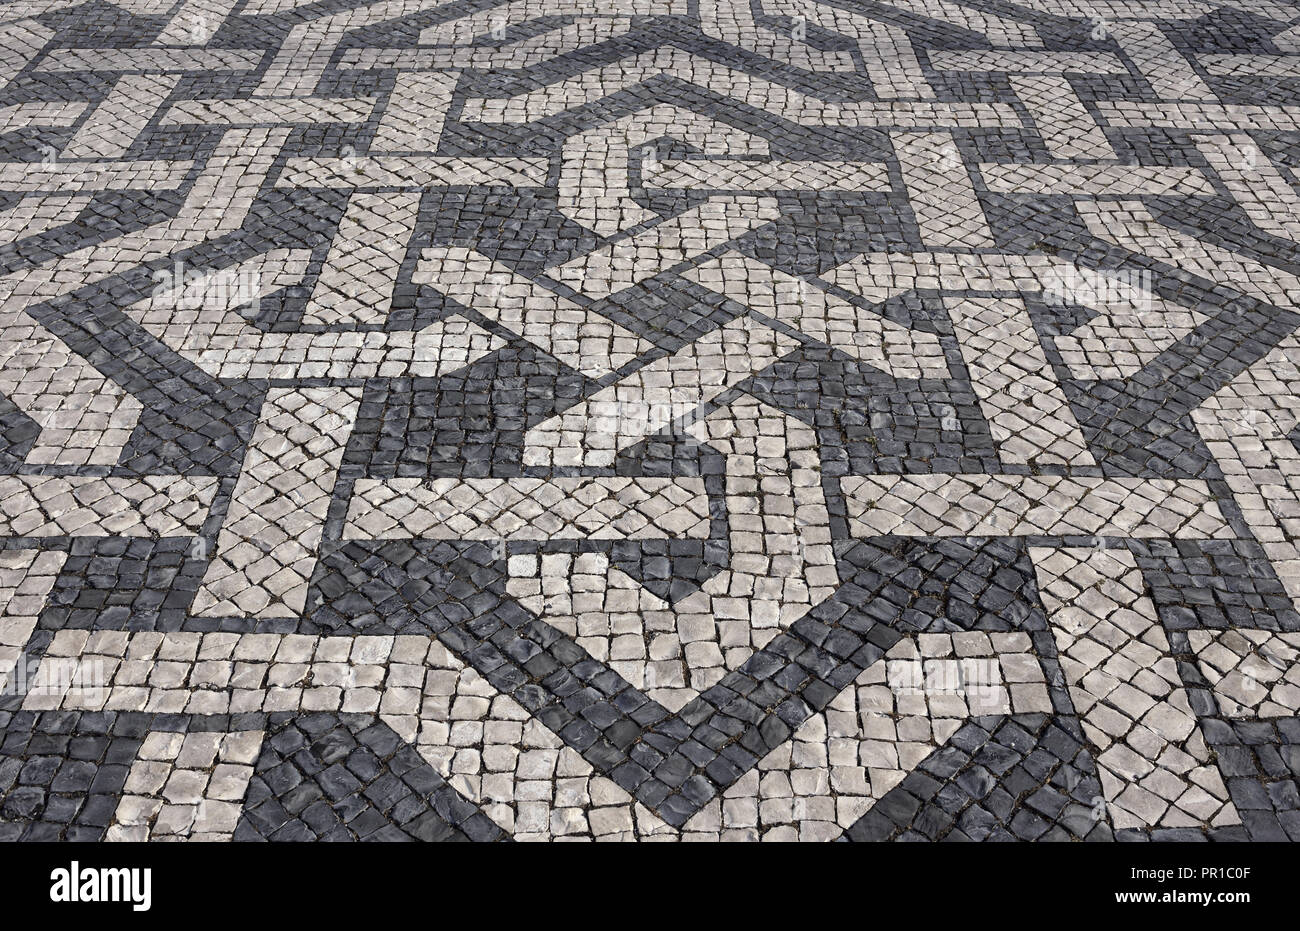 Tipica portoghese bianco e nero mosaico pietra calcada marciapiede - trovati in tutto il Portogallo - Lisbona, Cascais, Guimaraes. Anche in trovata in Brasile. Foto Stock